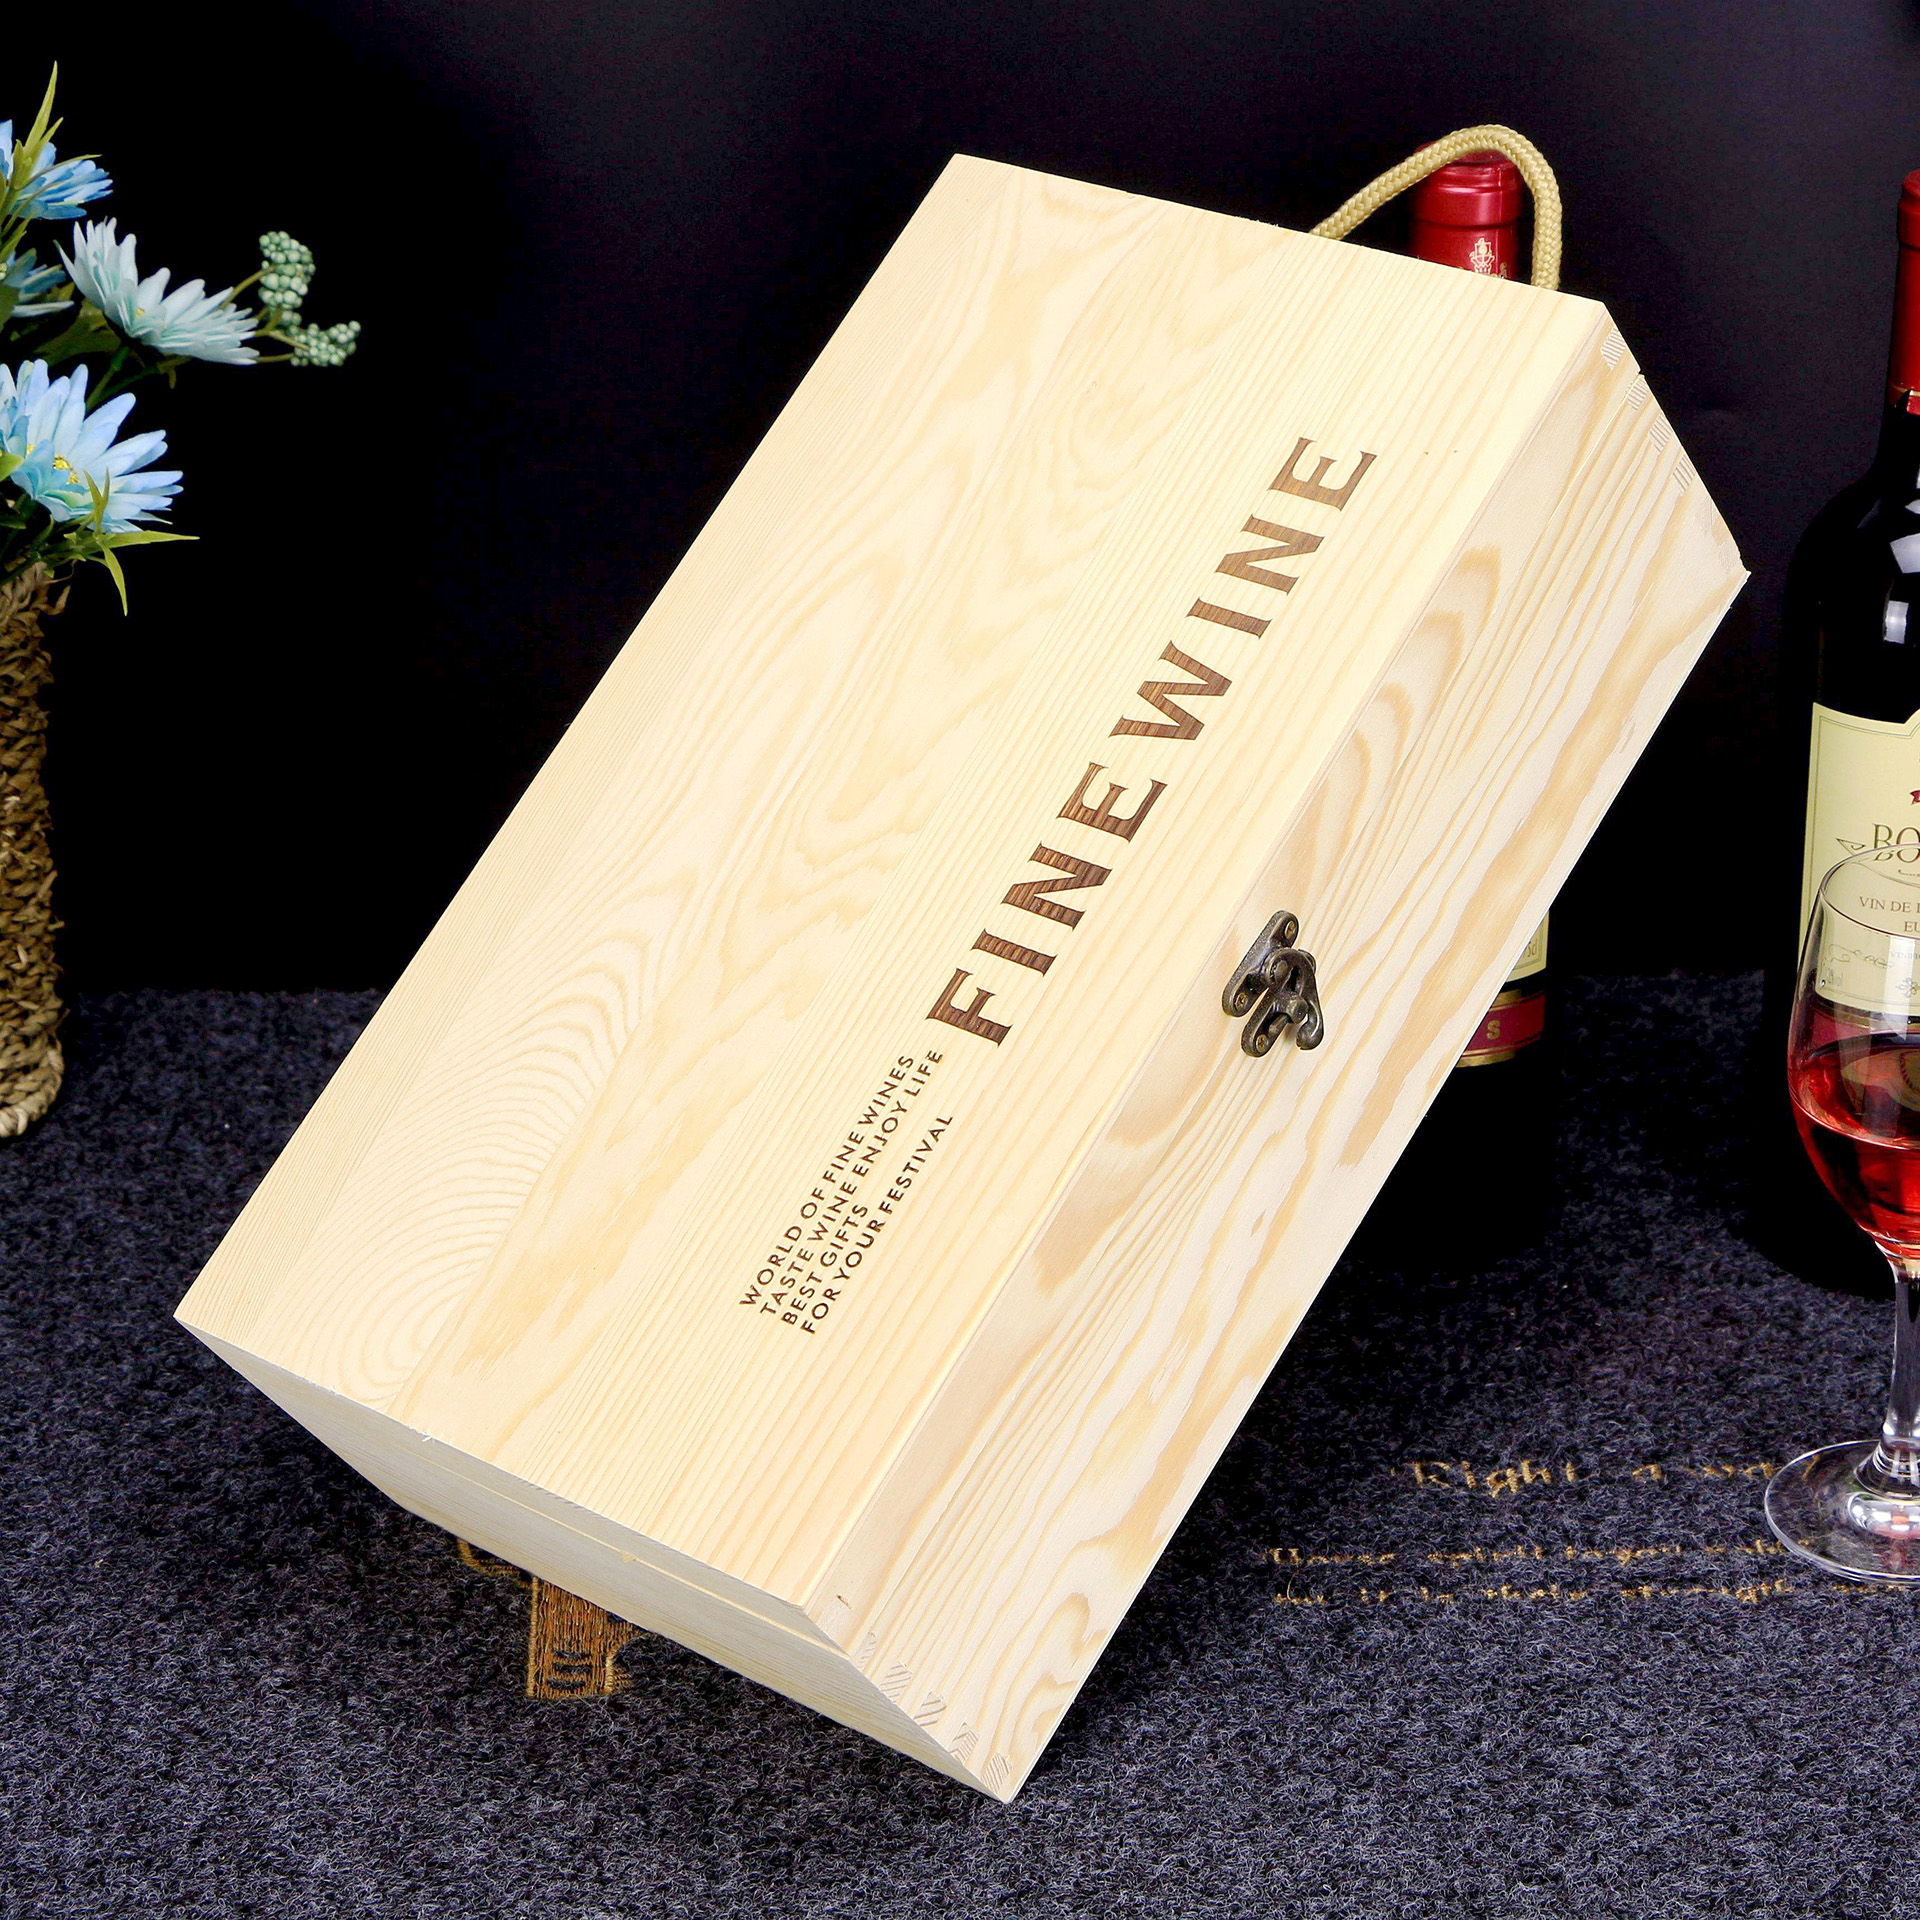 Custom luxury wine box packaging